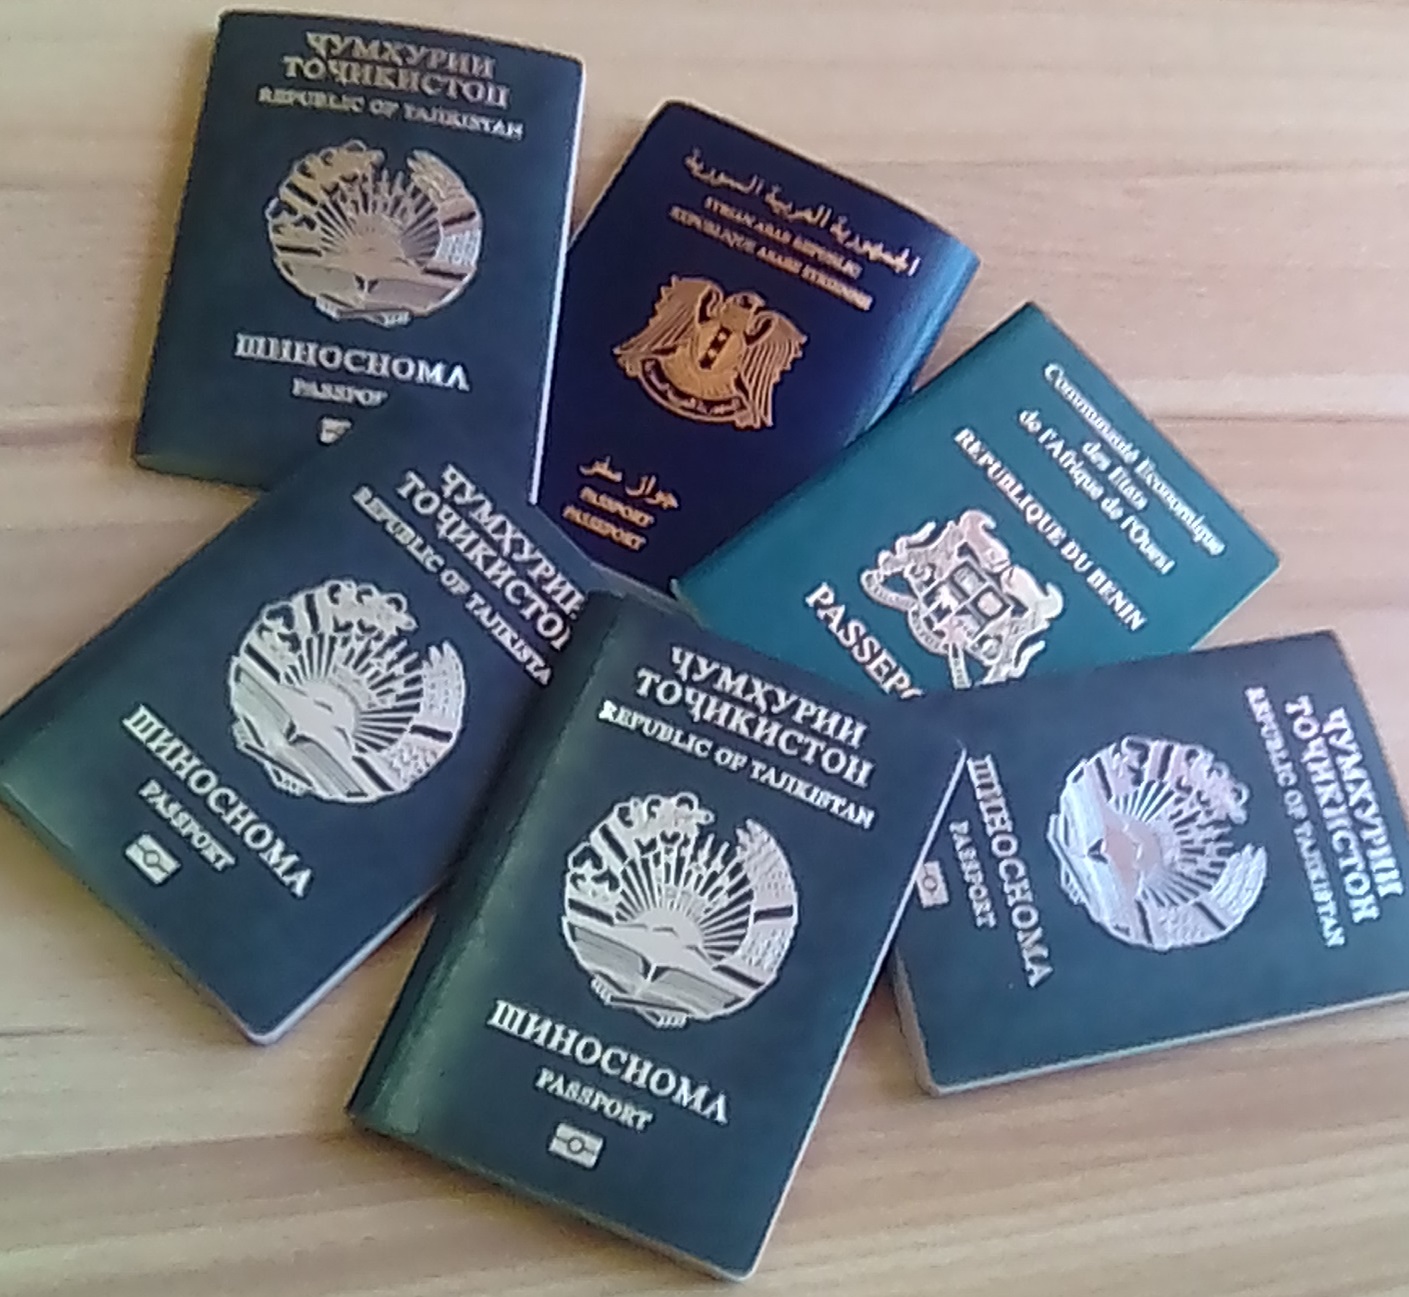 Паспорт иностранного гражданина